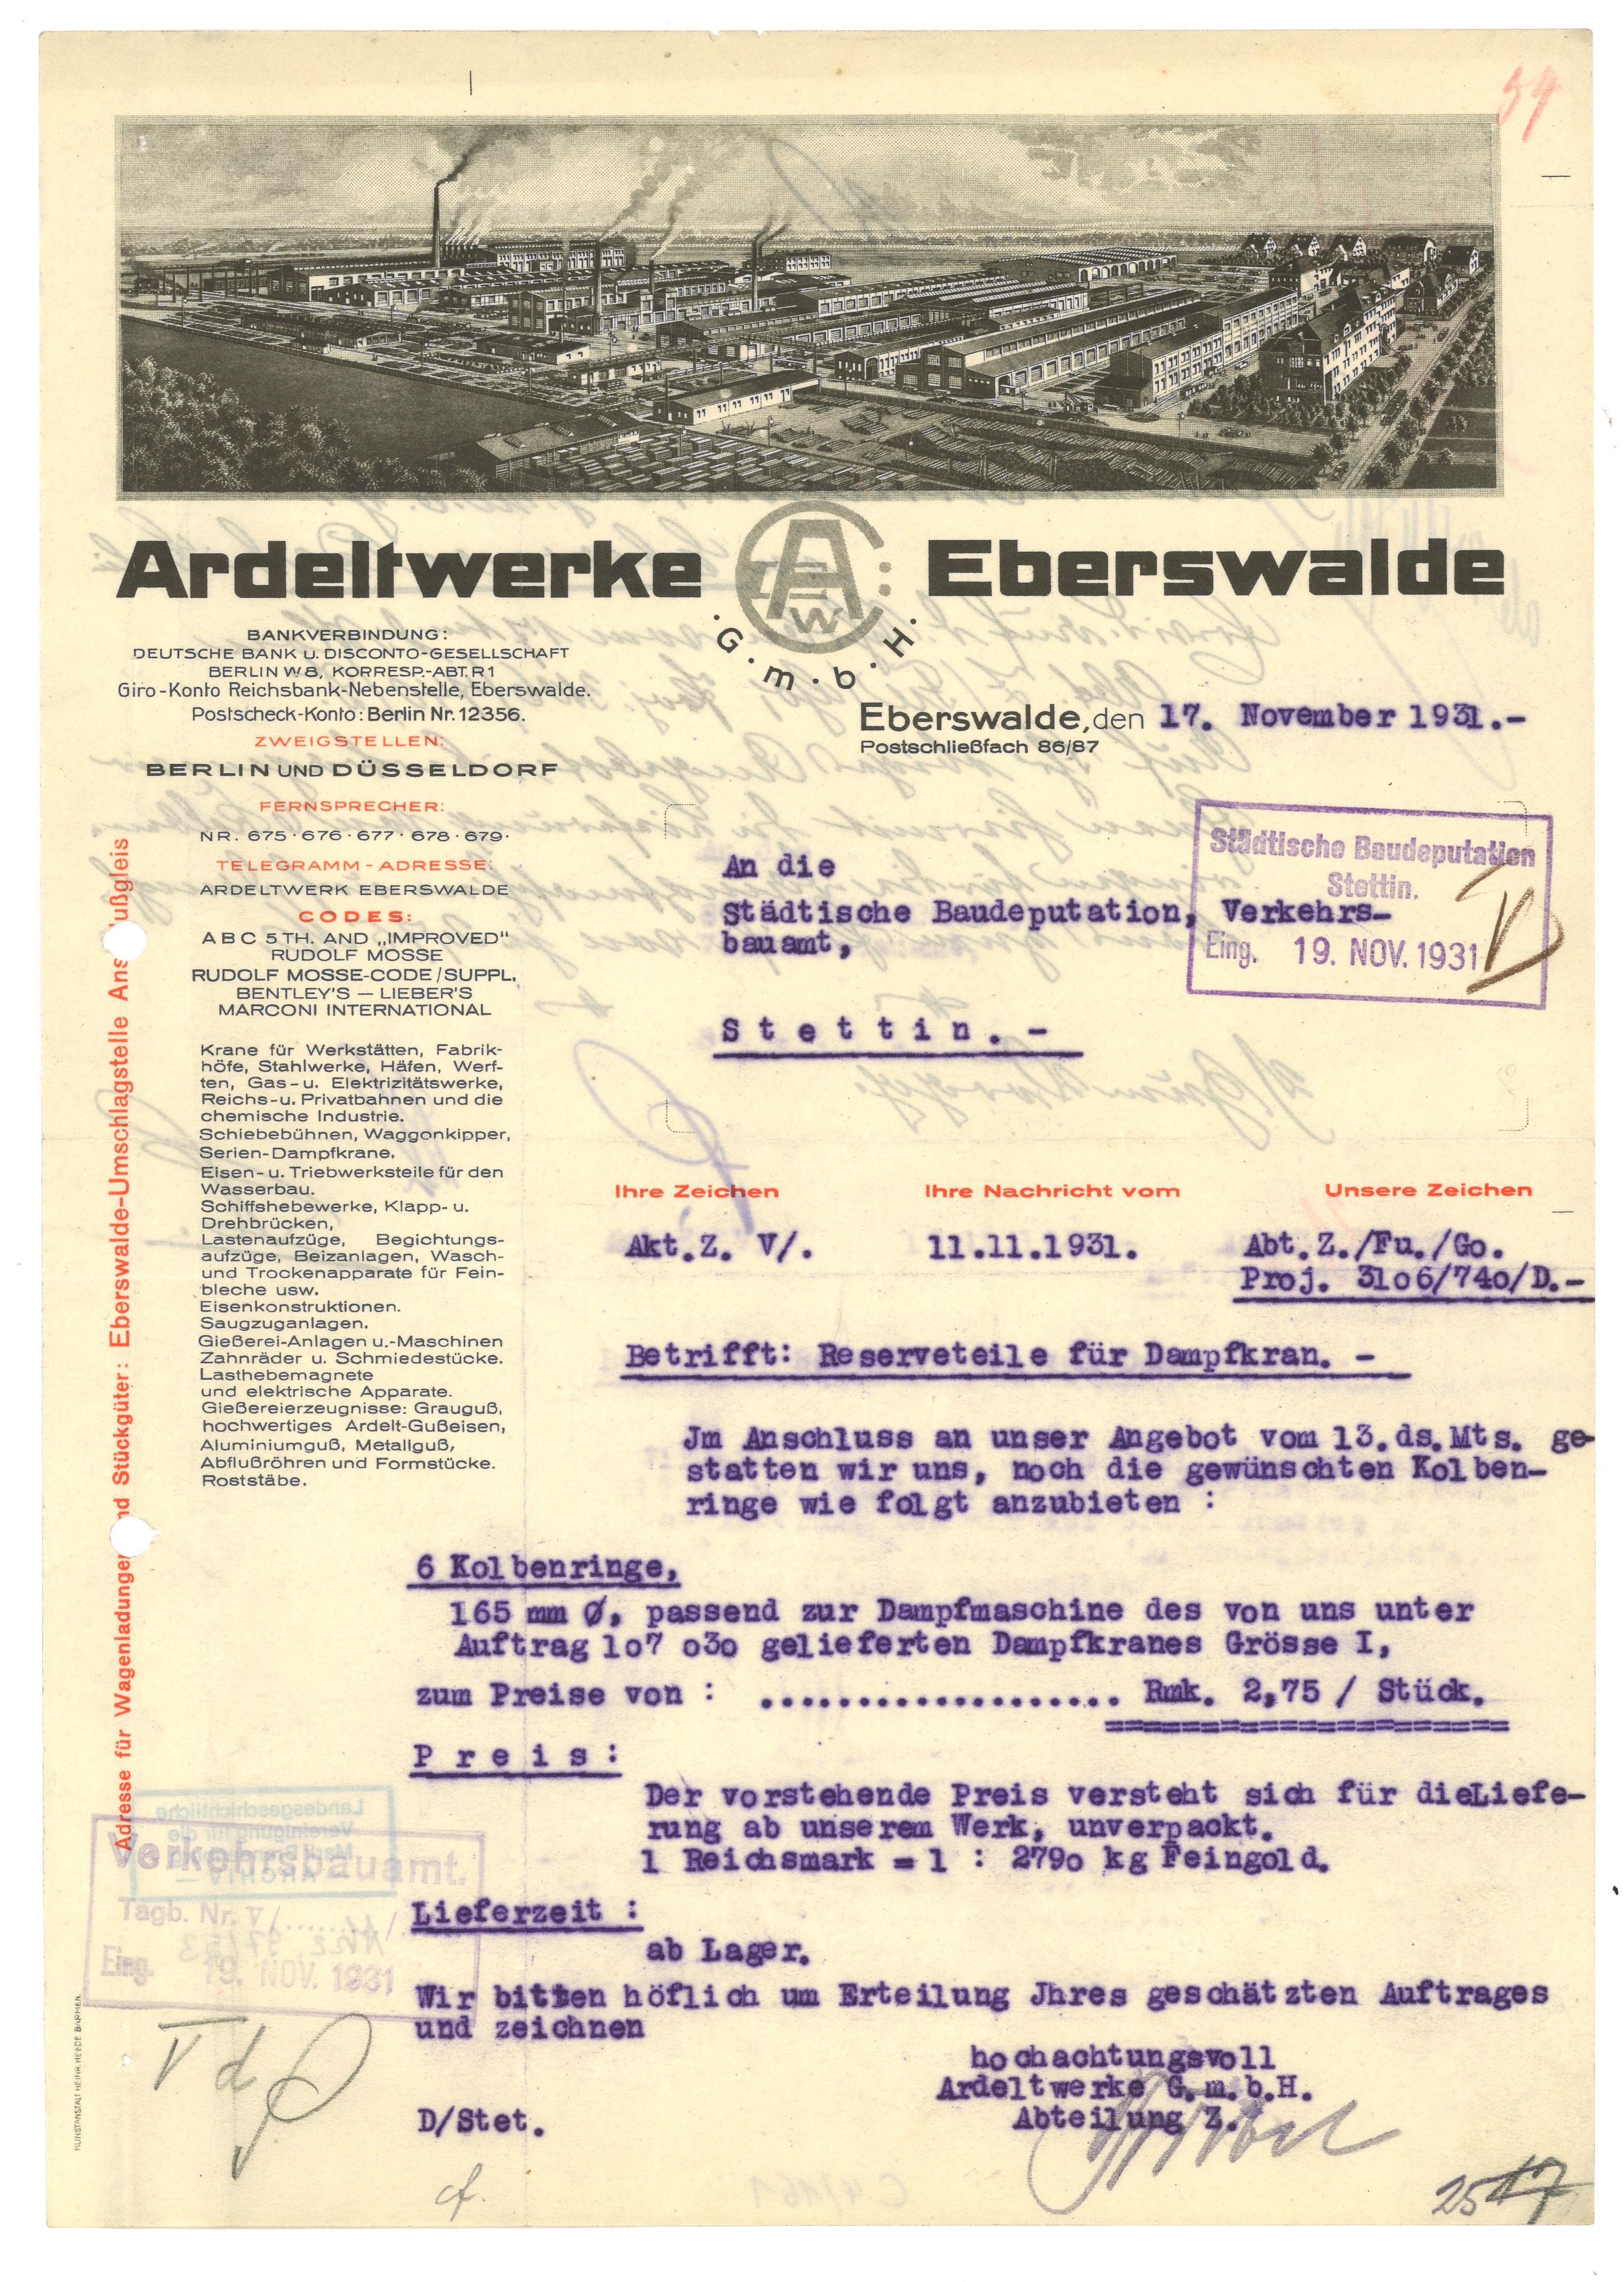 Schreiben der Ardeltwerke Eberswalde 1931 (Landesgeschichtliche Vereinigung für die Mark Brandenburg e.V., Archiv CC BY)